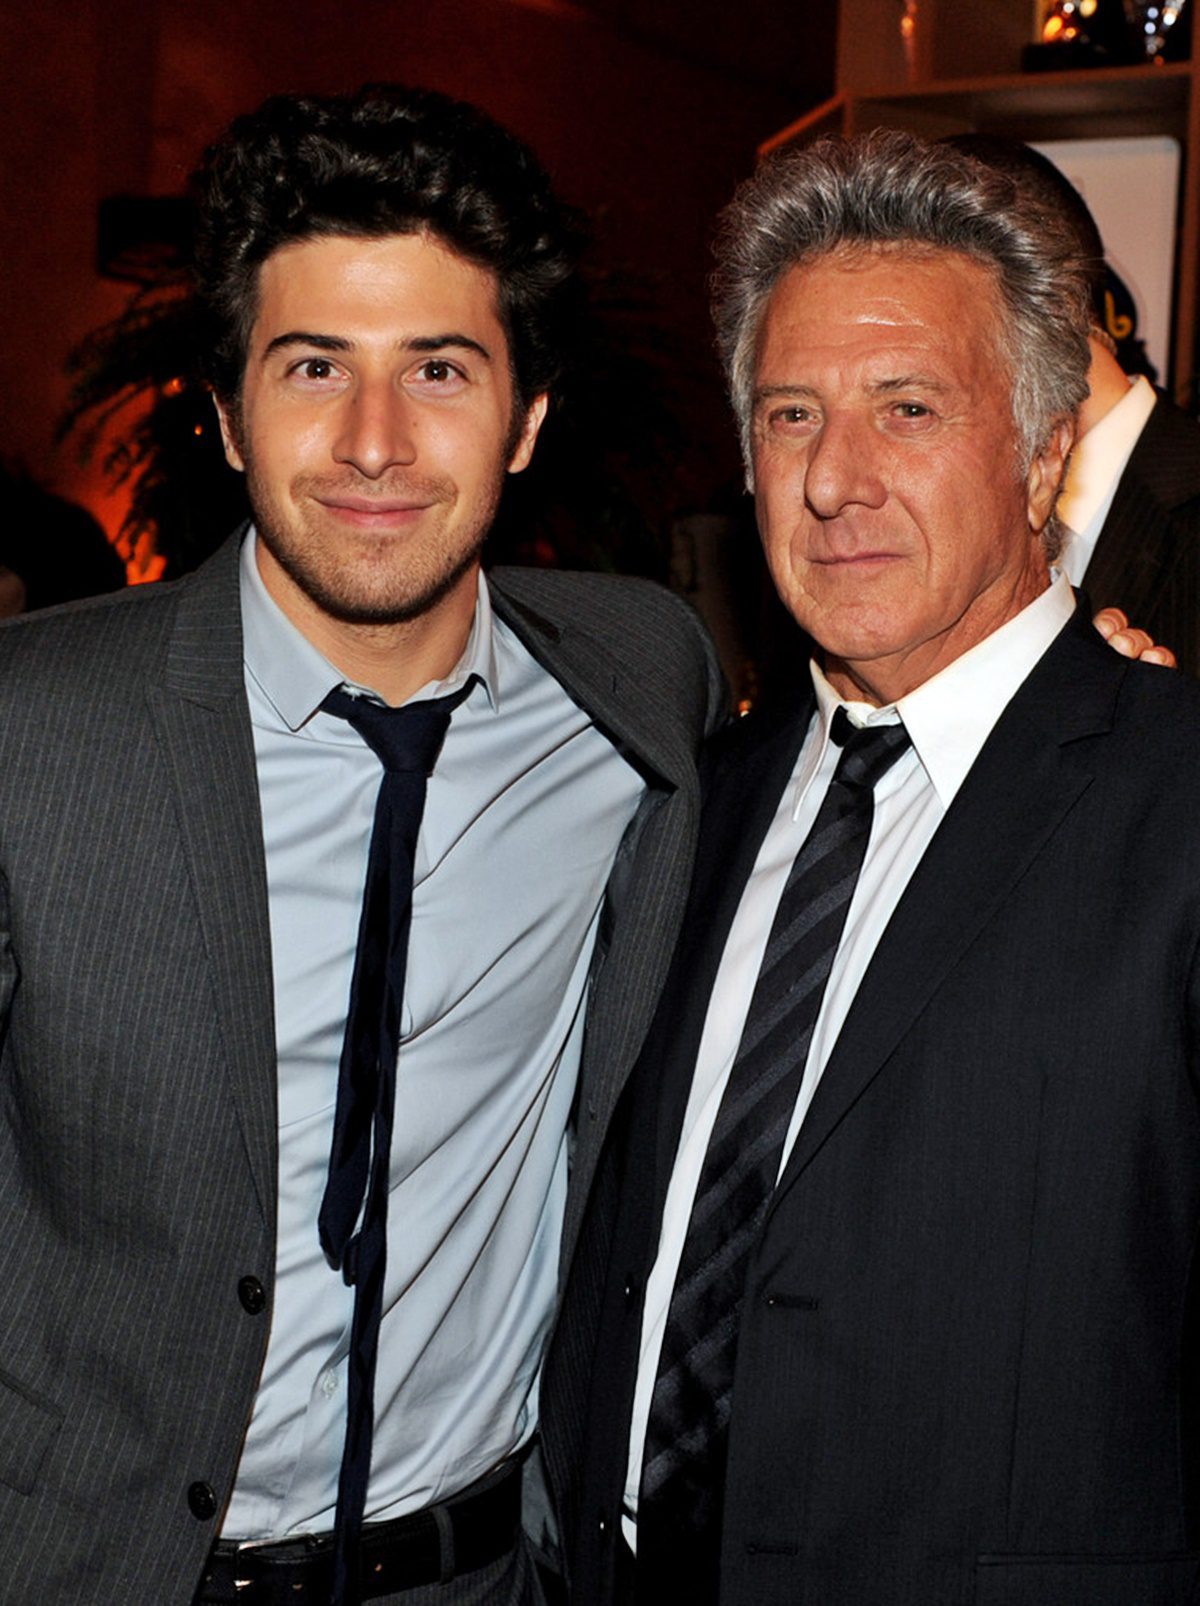 Dustin Hoffman fia irtó jóképű: a 41 éves Jake az apja után szintén a mozi világát választotta magának